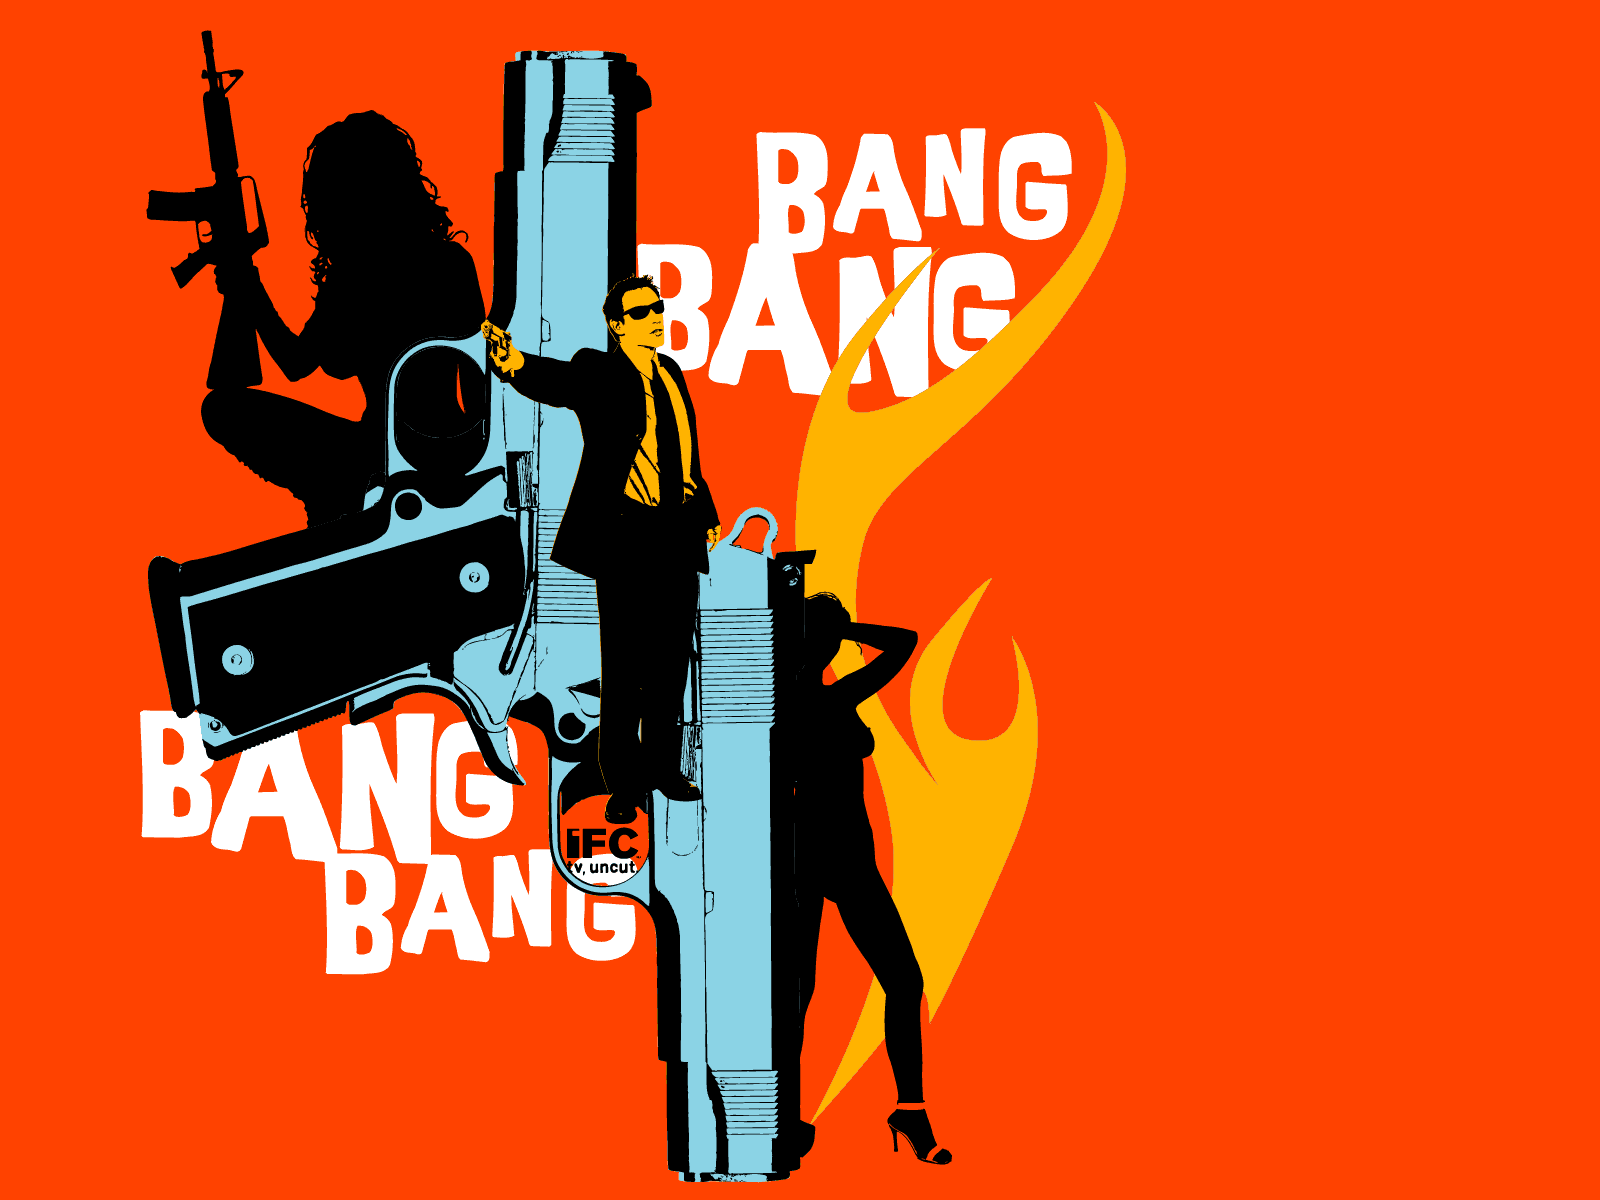 I am me bang. Bang. Ban ban. G-ba. Bang картинка.